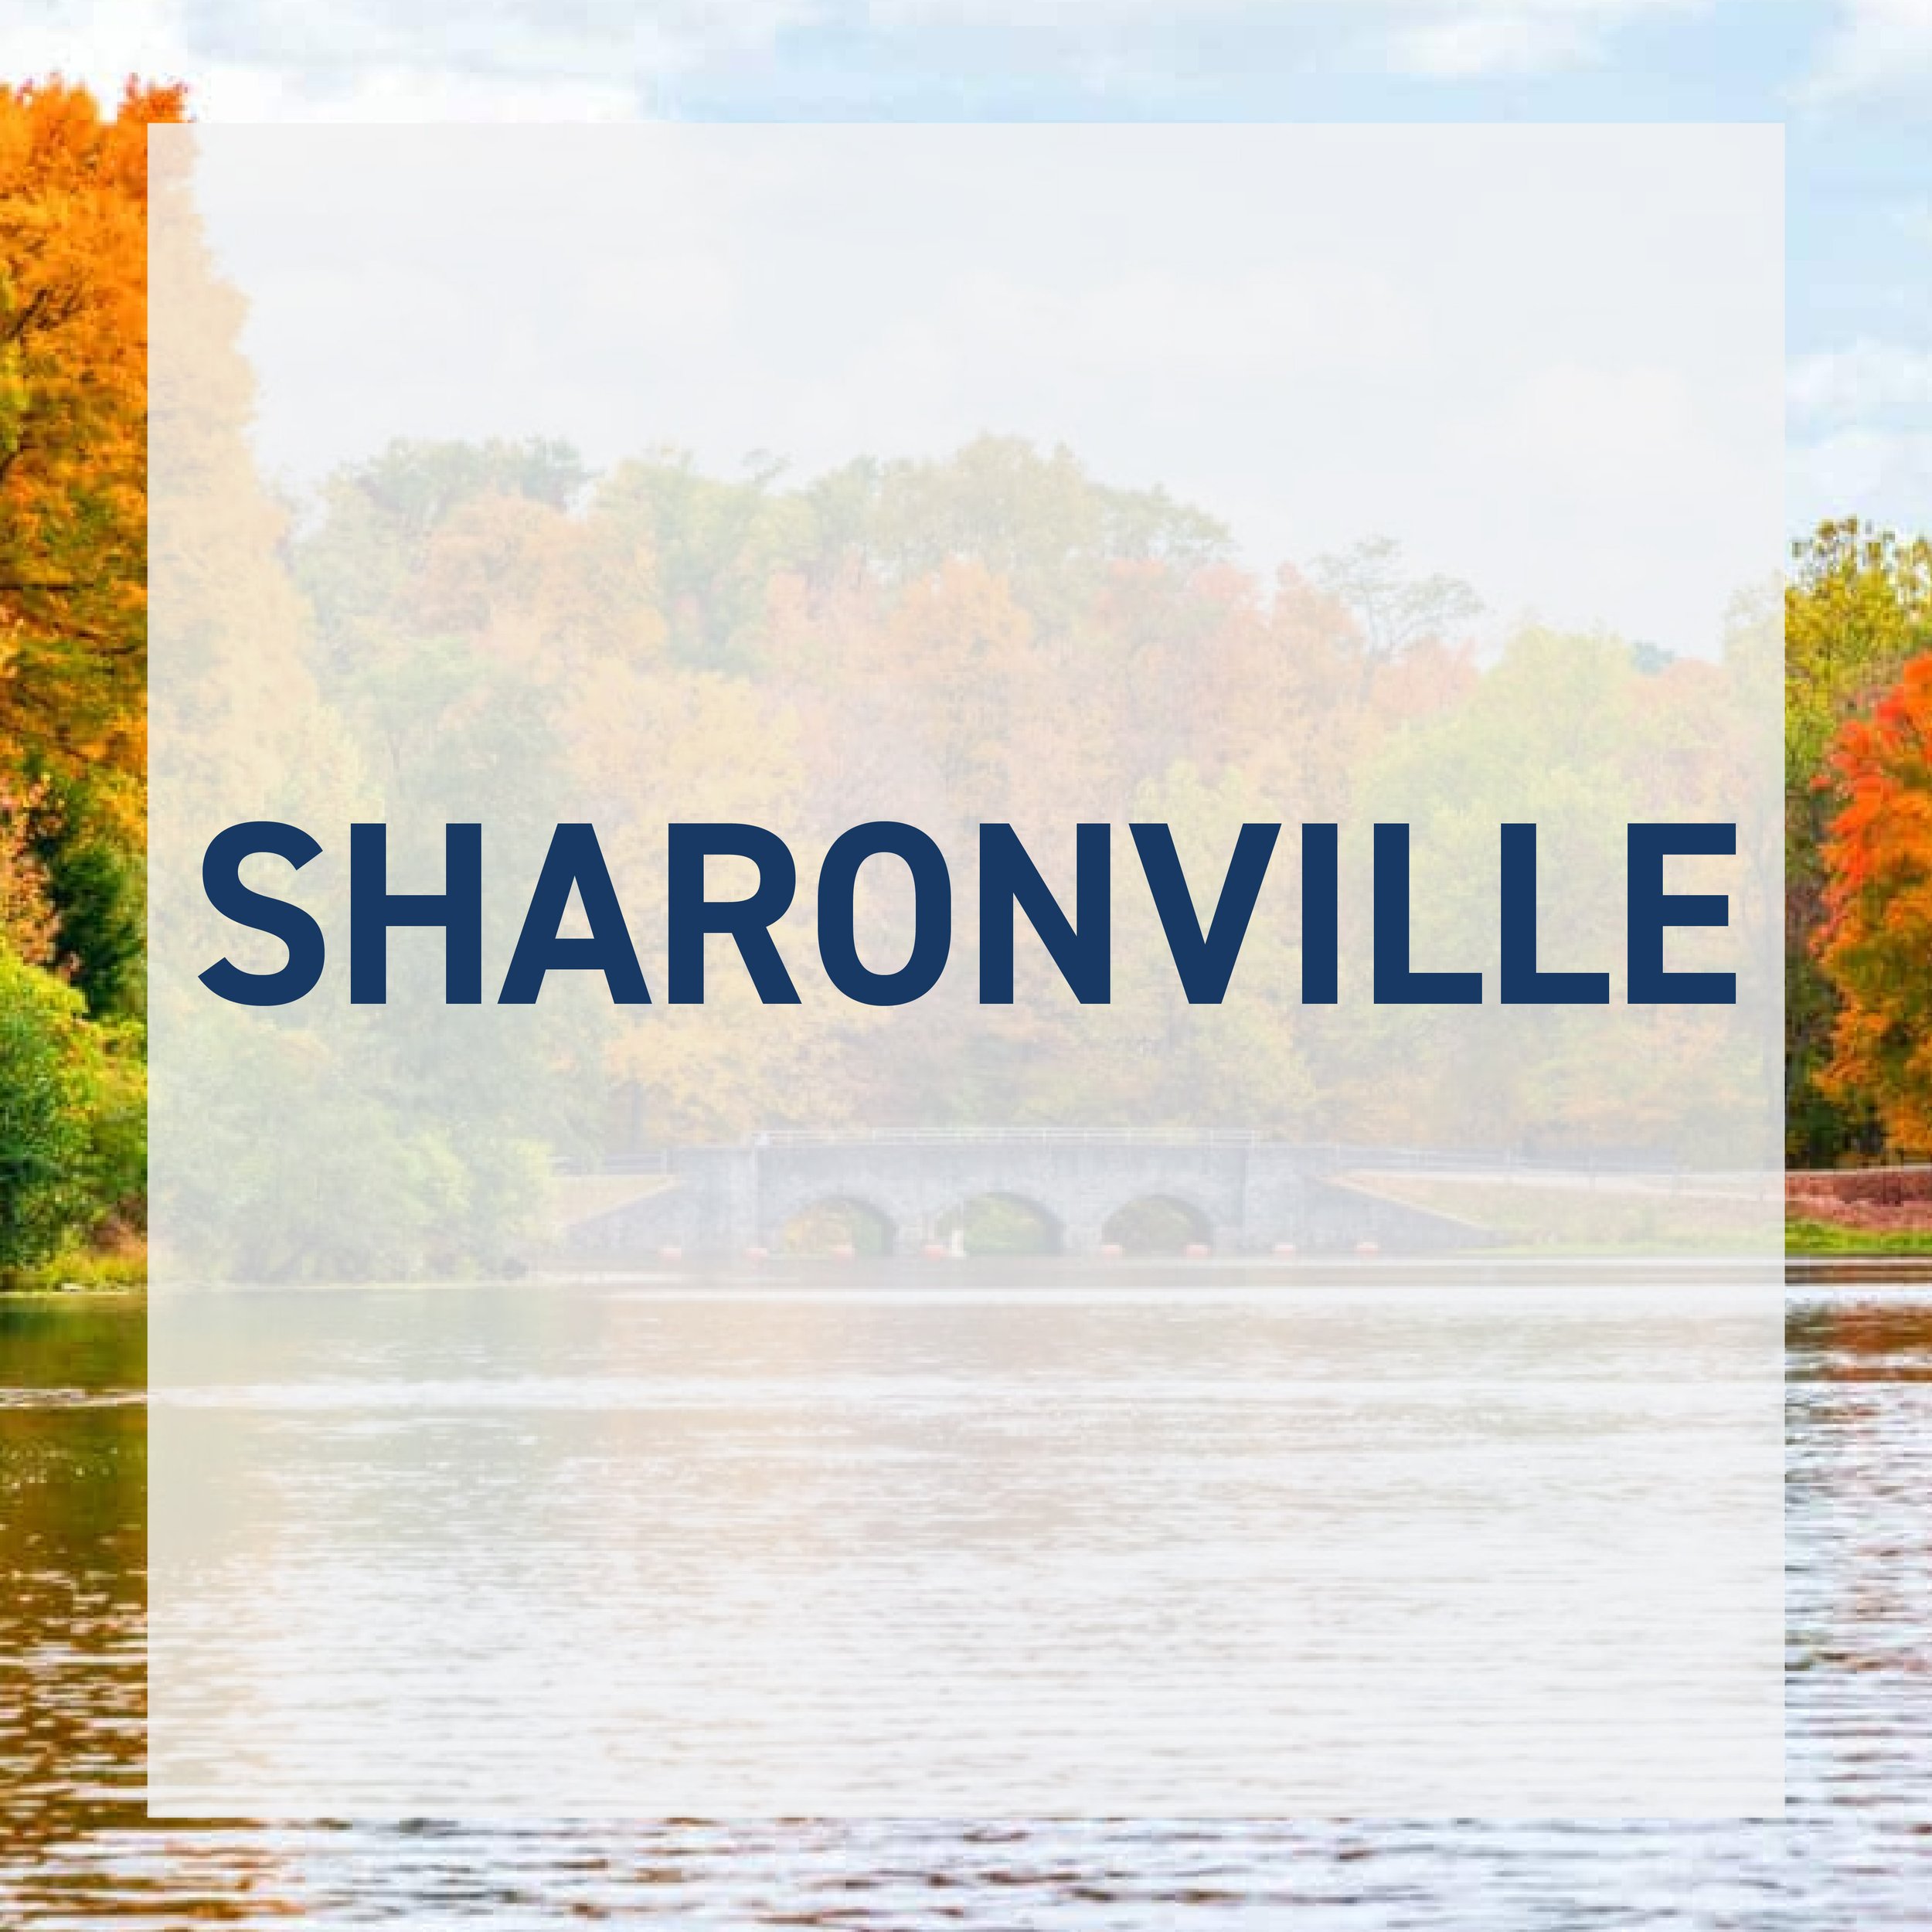 Sharonville-01.jpg